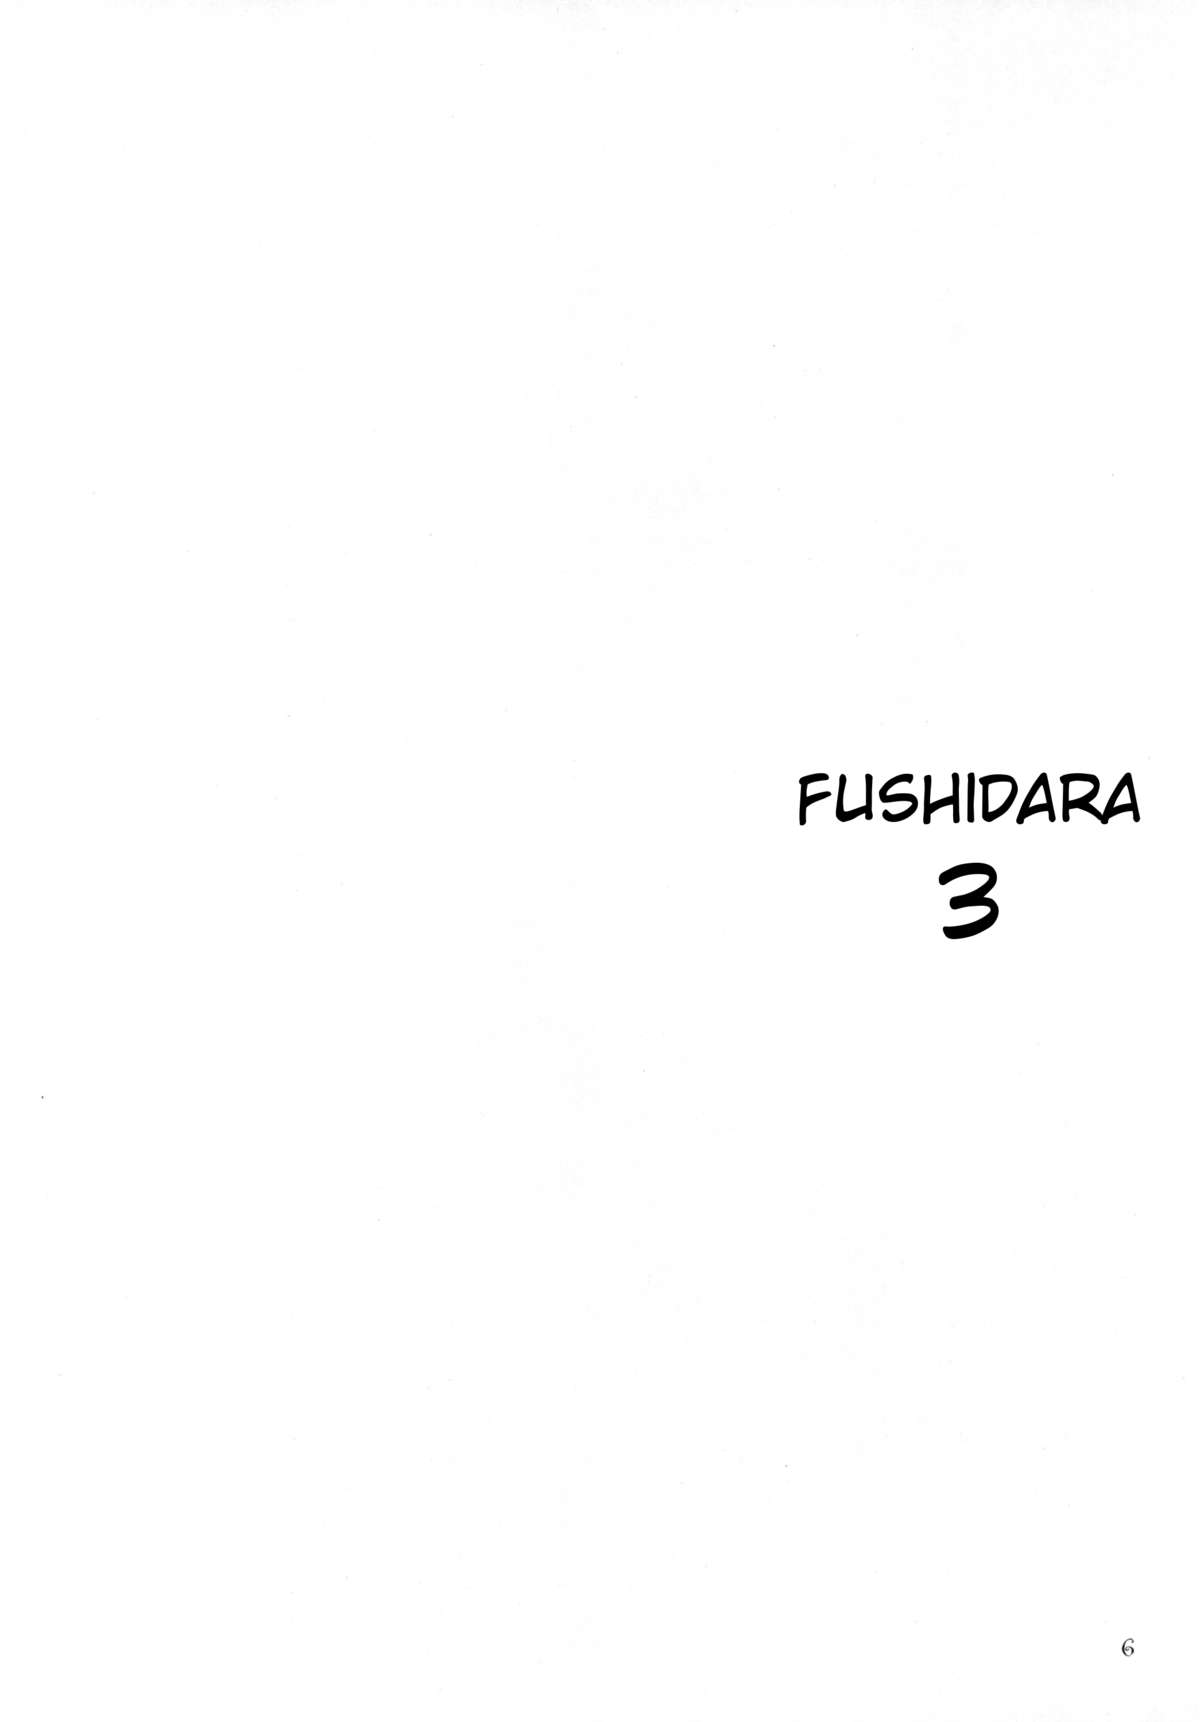 [BEAT-POP (尾崎未来)] FUSHIDARA vs YOKOSHIMA 3 [英訳]